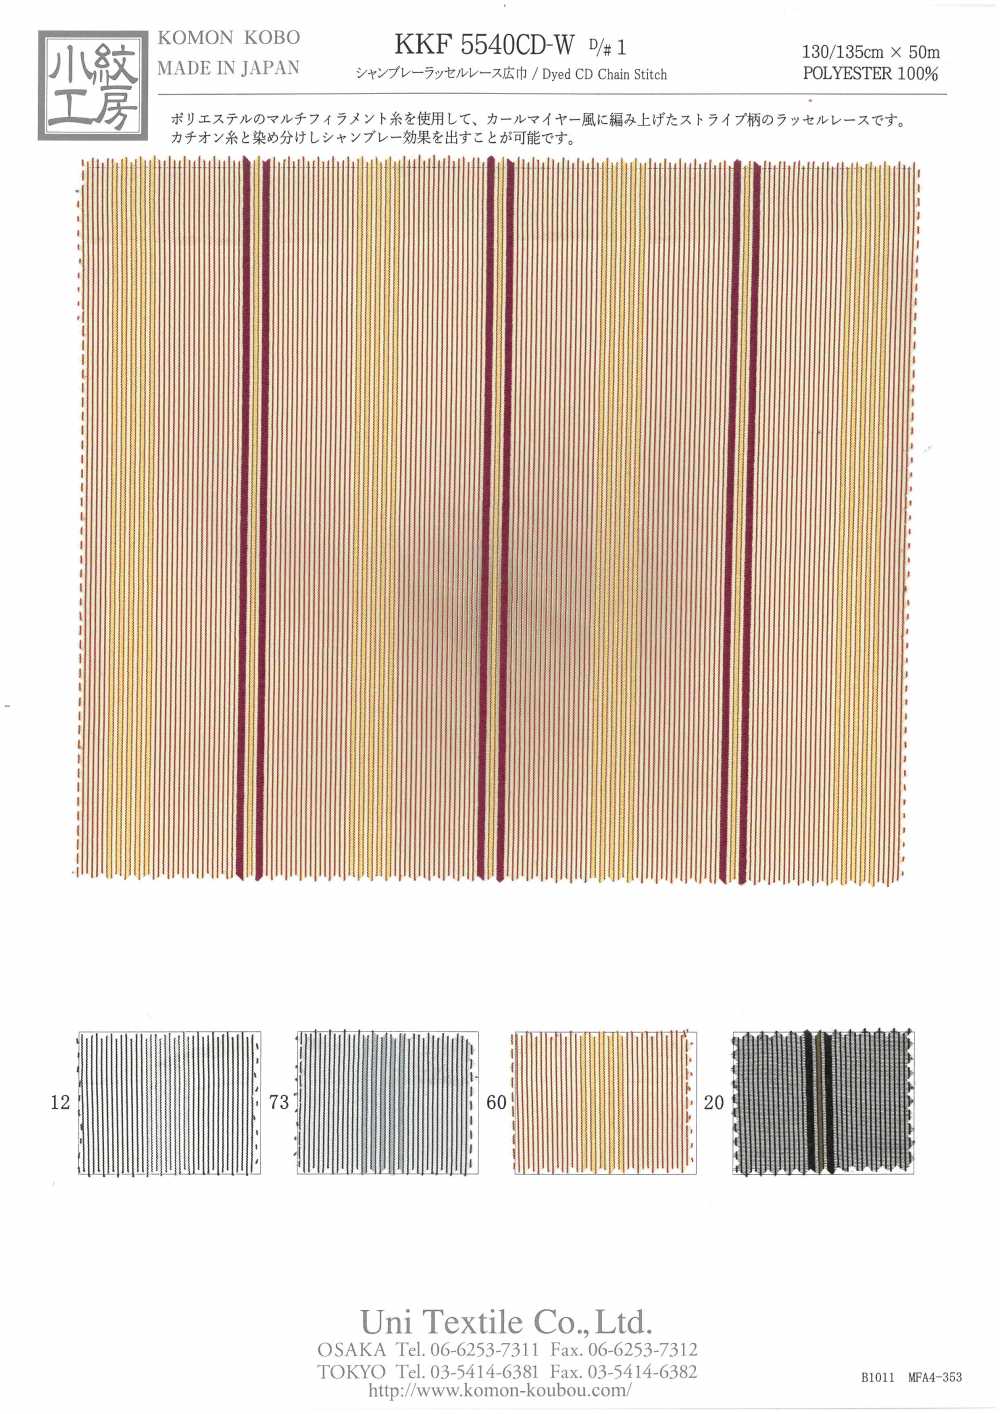 KKF5540CD-W-D/1 Dentelle Raschel Chambray Large Largeur[Fabrication De Textile] Uni Textile